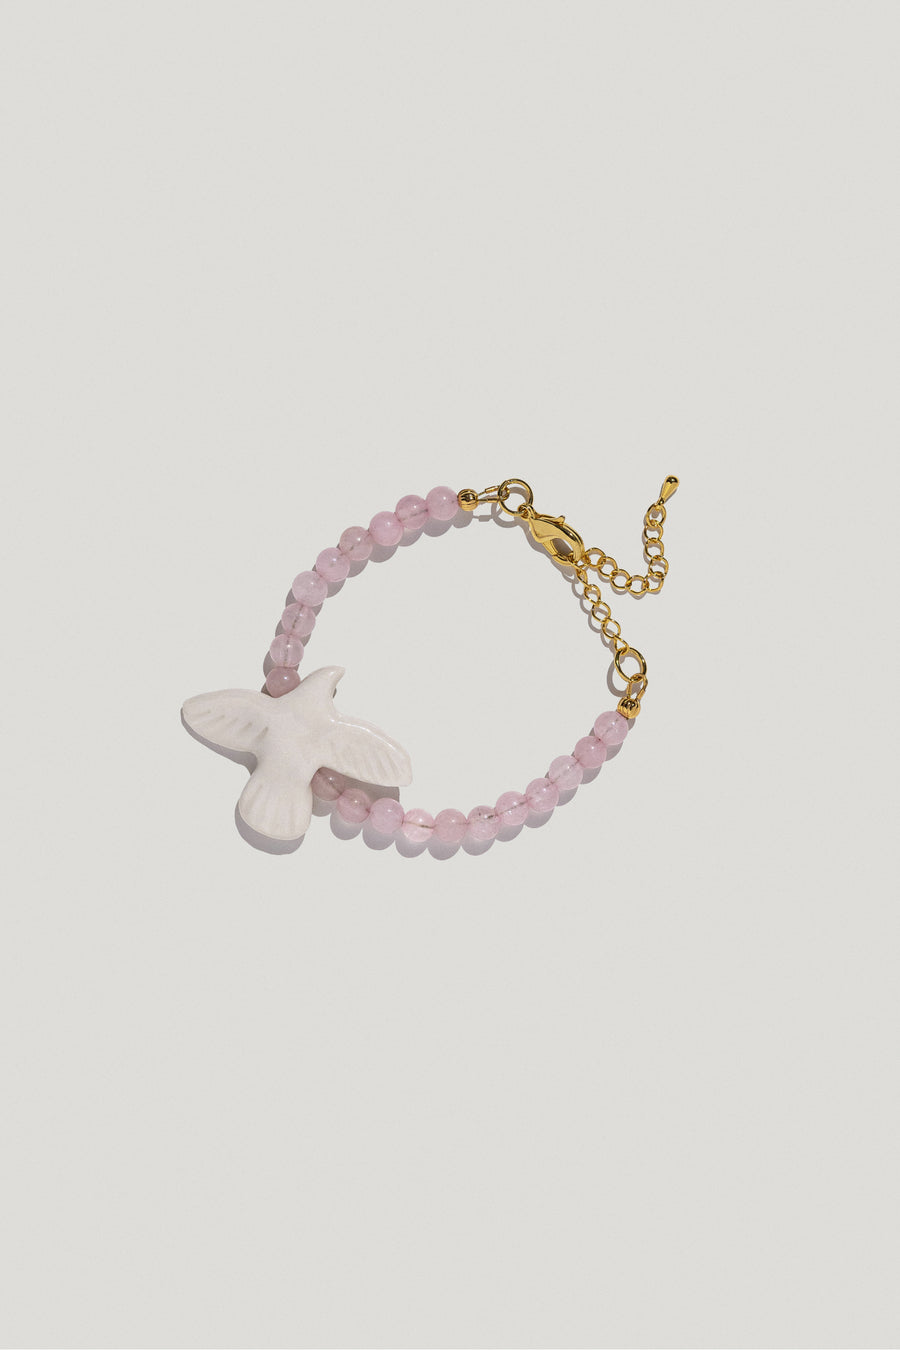 Myrni bracelet with bubble-gum quartz and a porcelain bird